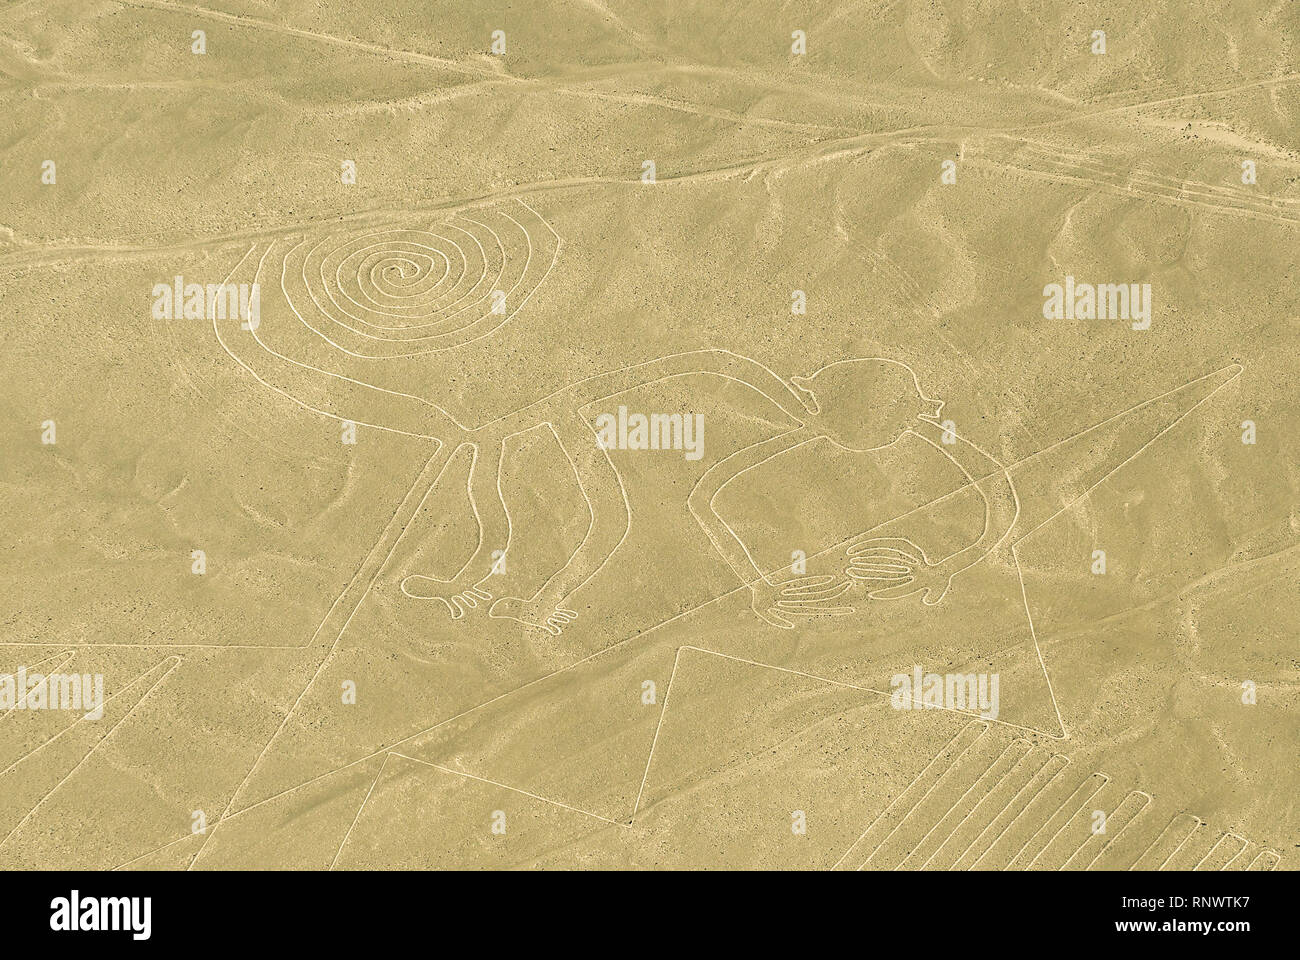 La figure de singe dessin dans le désert de sable connu sous le nom des lignes de Nazca, près de la ville de Nazca, Pérou, Amérique du Sud. Banque D'Images